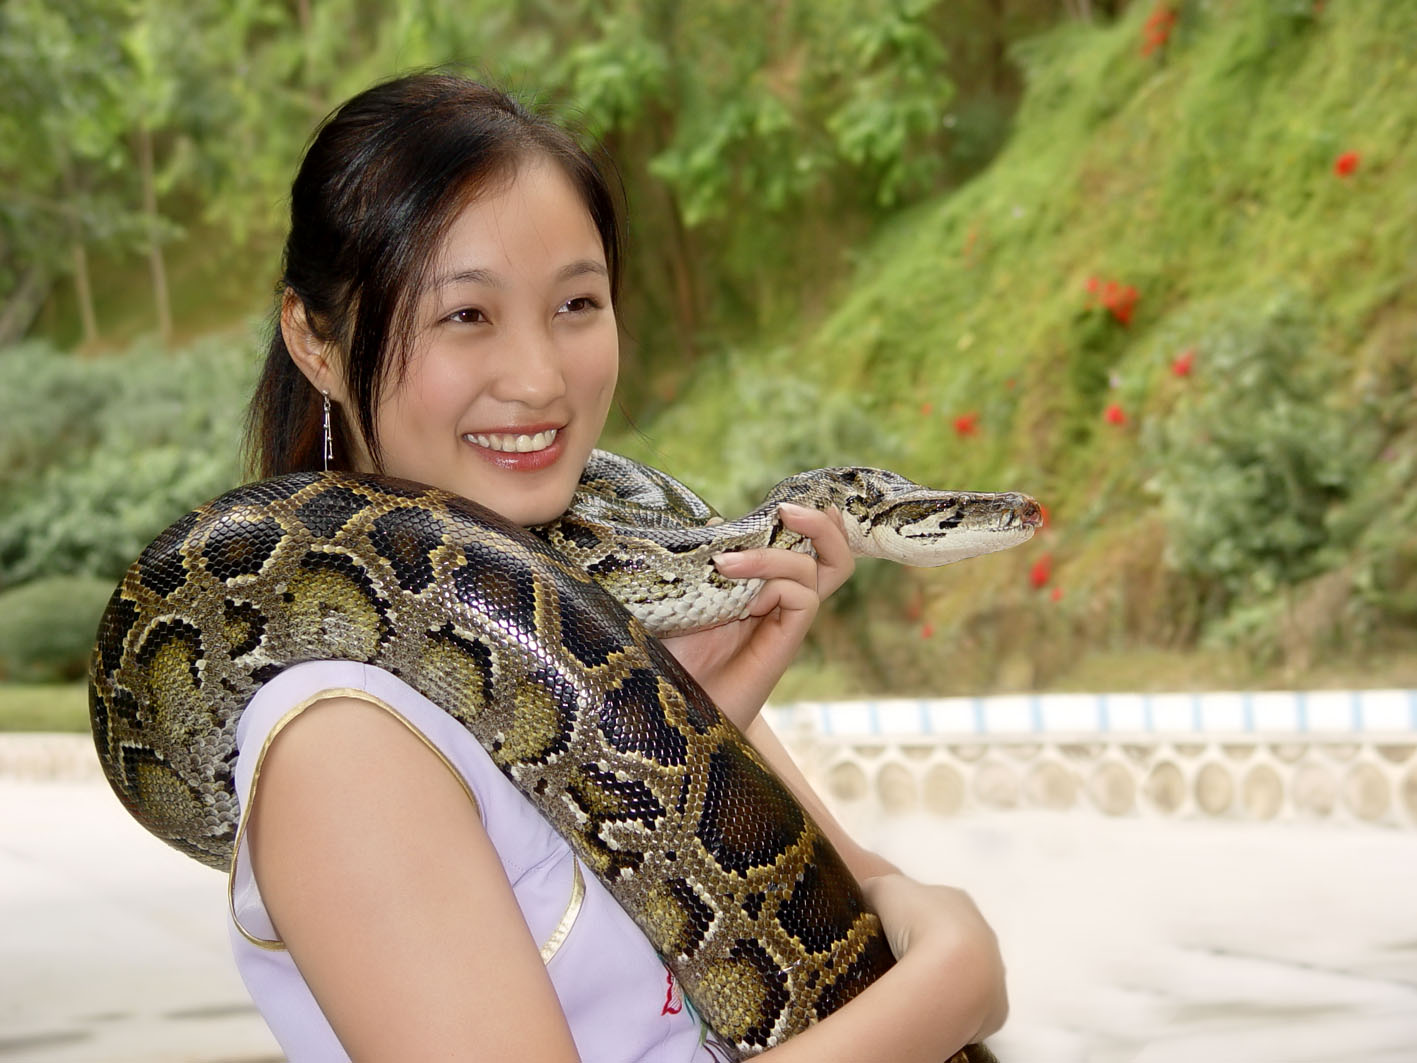 80后女子在家养7000条蛇 上演“美女与蛇”的故事-搜狐大视野-搜狐新闻